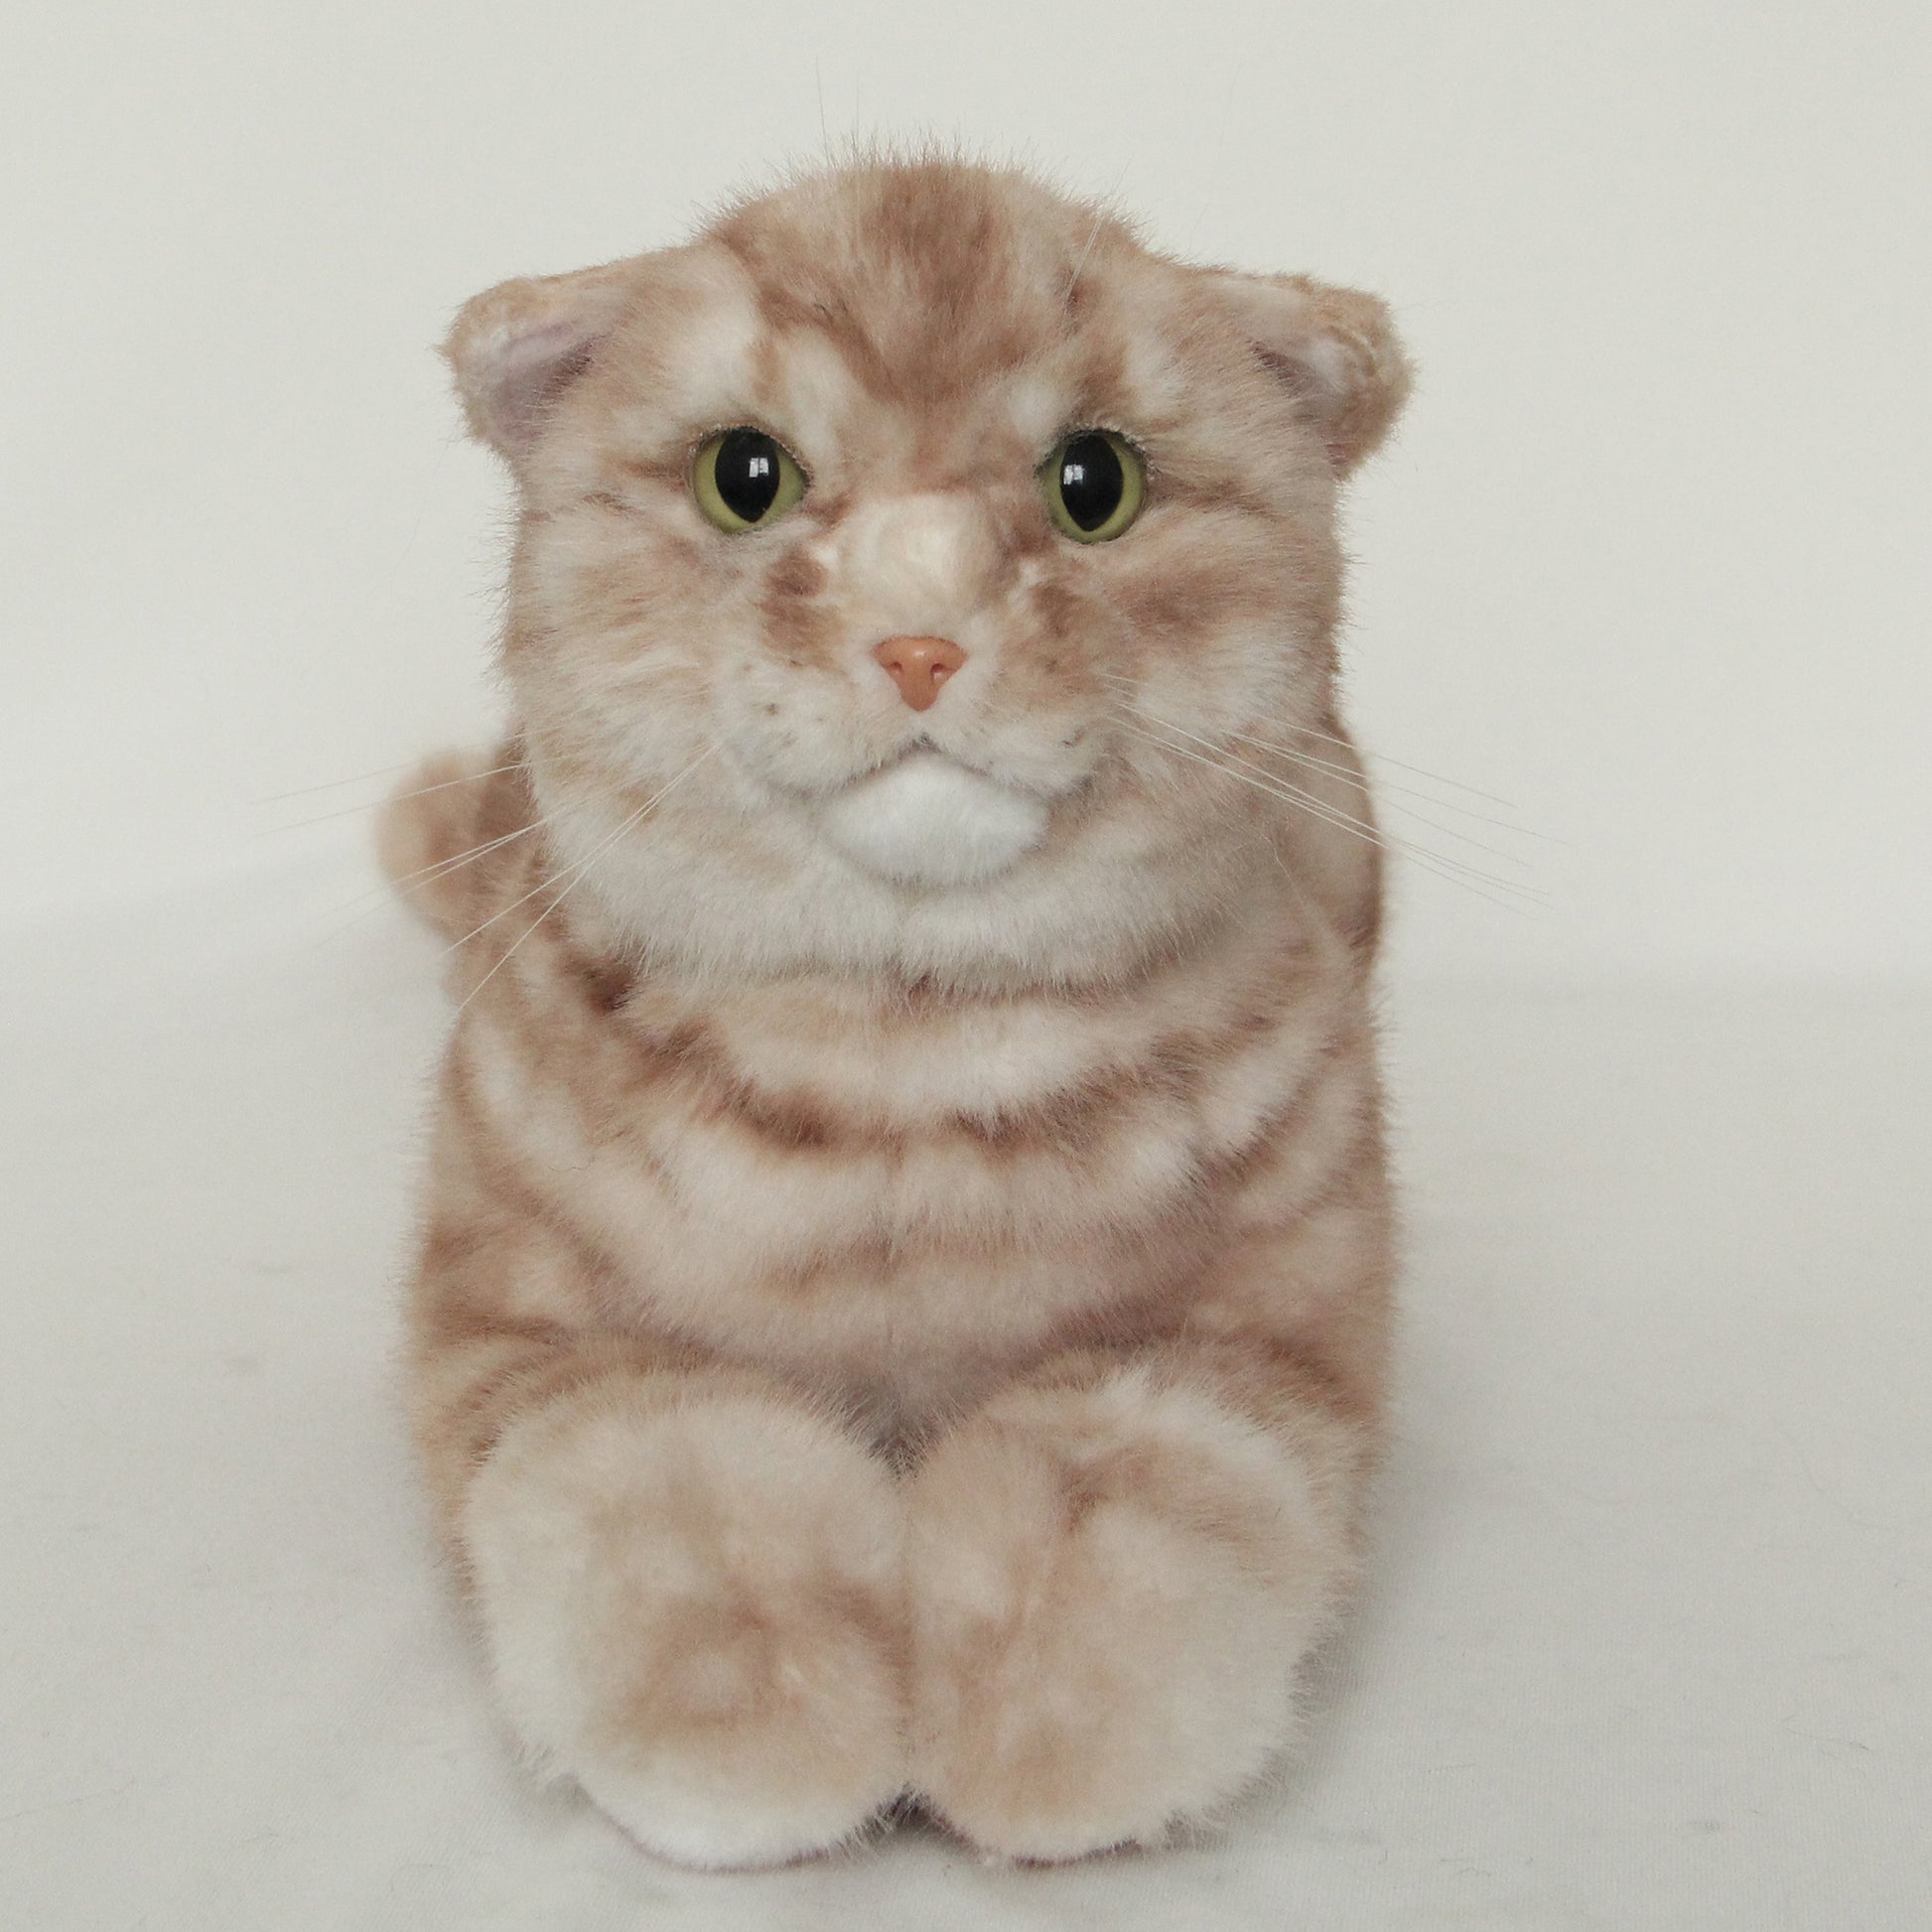 NO.31 Orange striped kitten - Chongker